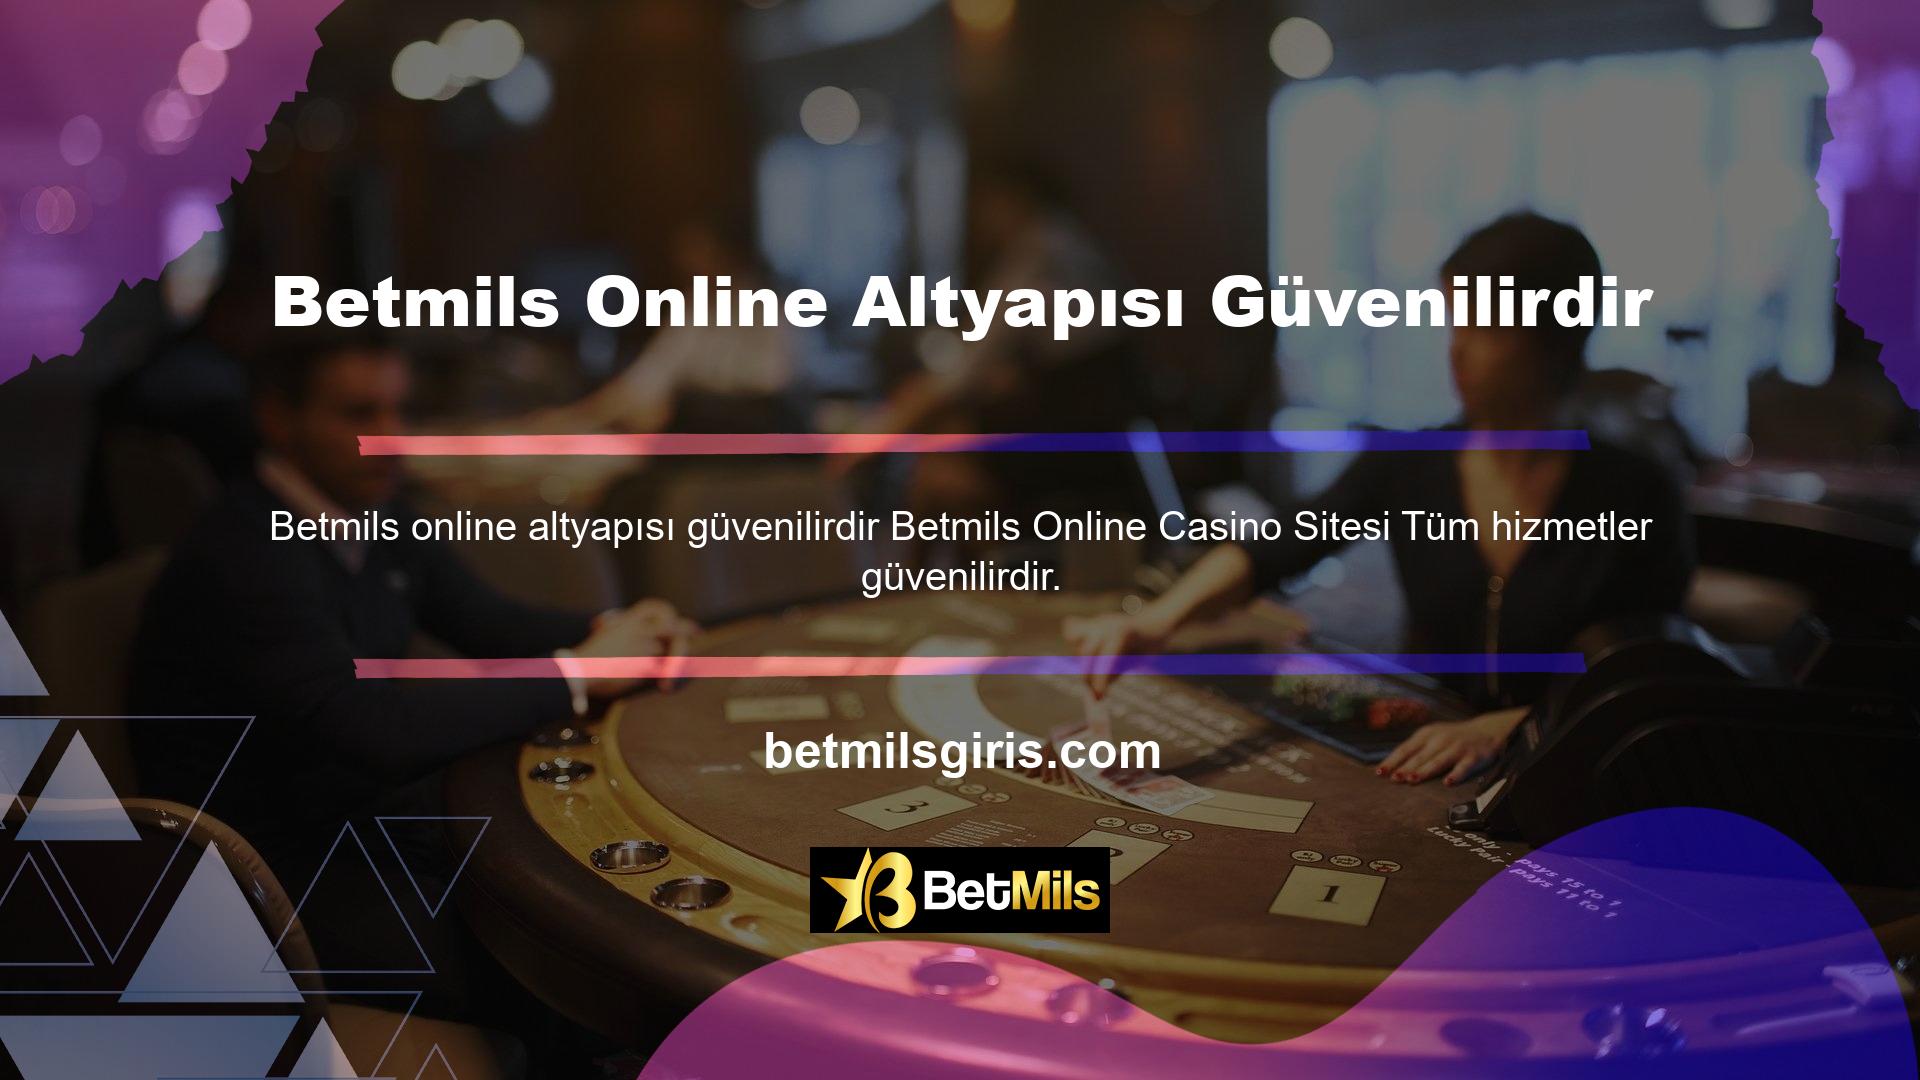 Live Betmils çevrimiçi altyapısı, üyelerine çok çeşitli profesyonel spor bahis seçenekleri sunan güvenilir bir bahis sitesi olarak başladı